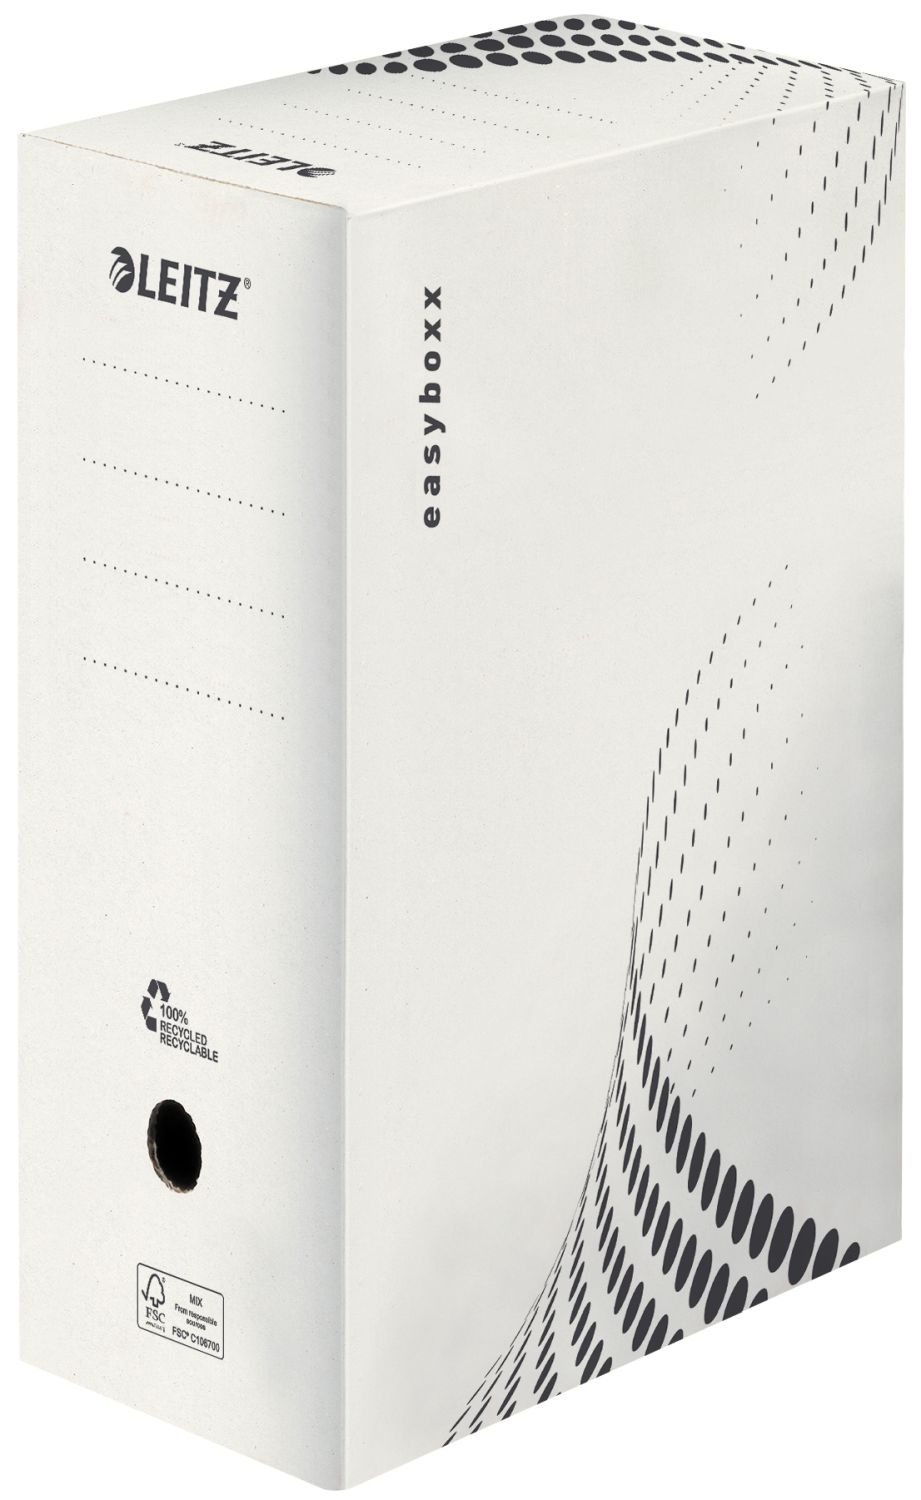 Archivschachtel easyboxx 6133-00-00 DIN A4, Rückenbreite 150 mm, mit Verschlusslasche, Wellpappe (RC), weiß